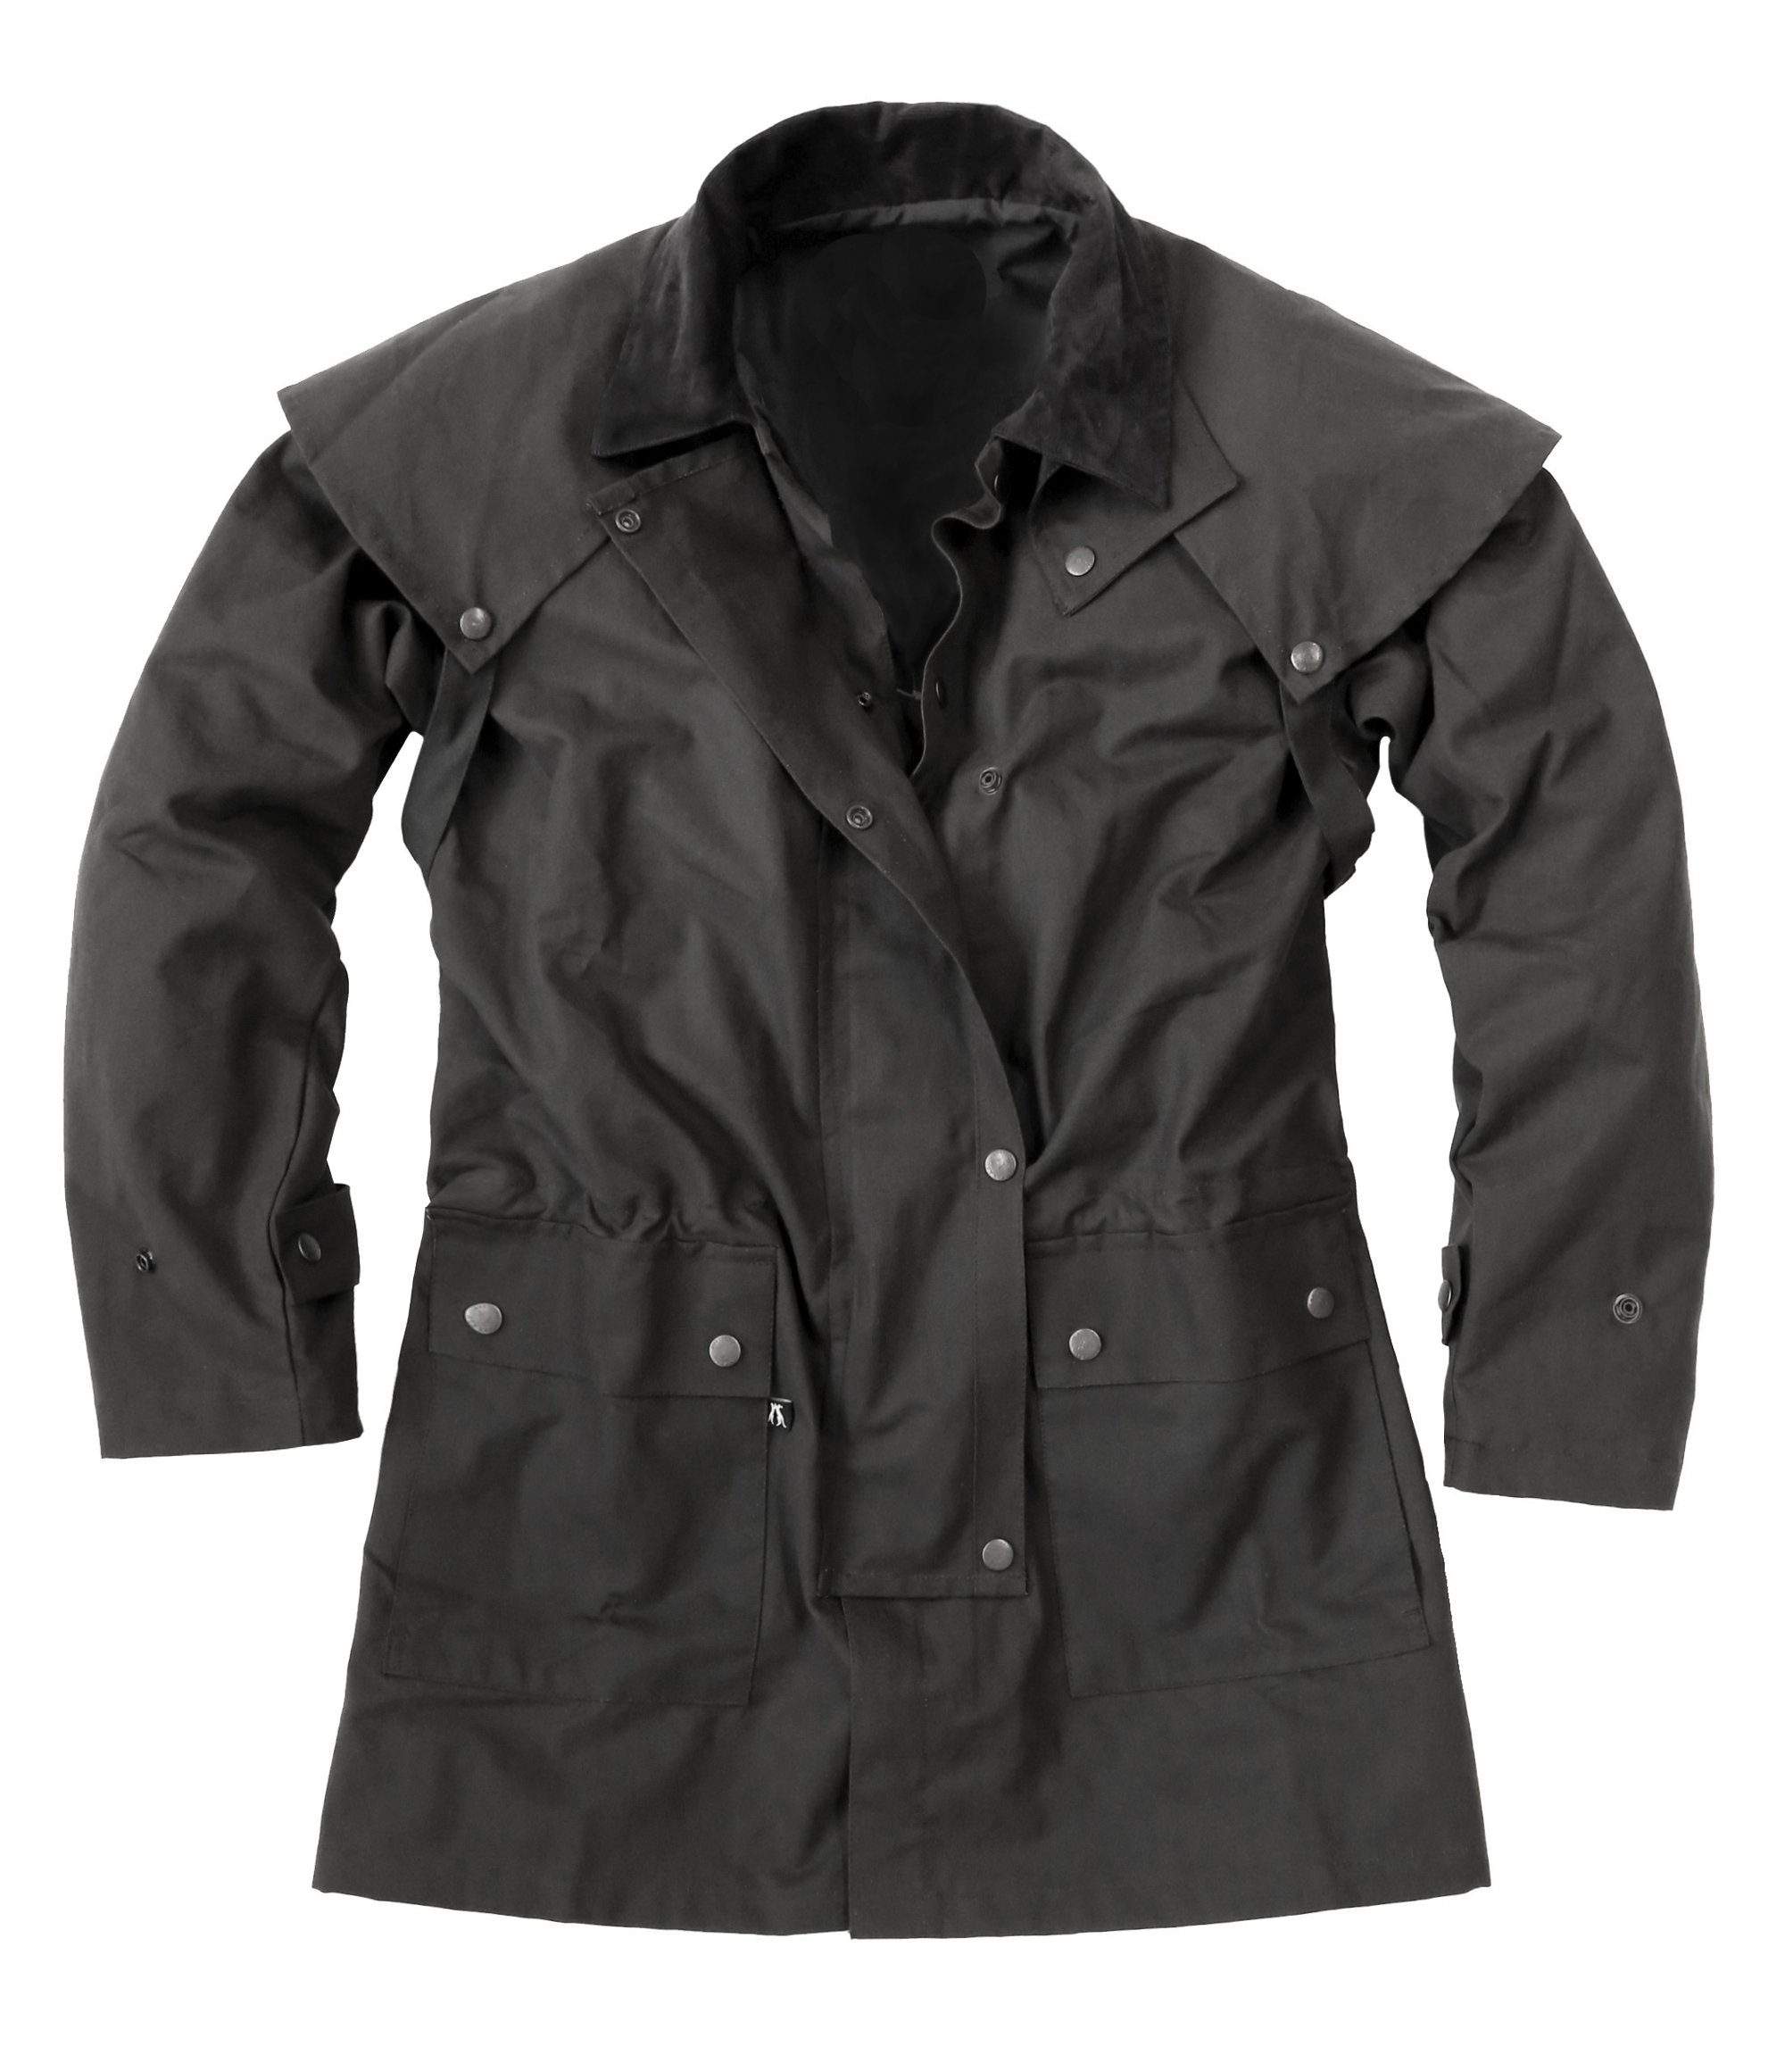 Outbacker Outdoorjacke Wachs-Jacke mit herausnehmbarem Winterfutter in schwarz und braun gewachste Baumwolle, herausnehmbares Winterfutter, bis 5XL erhältlich